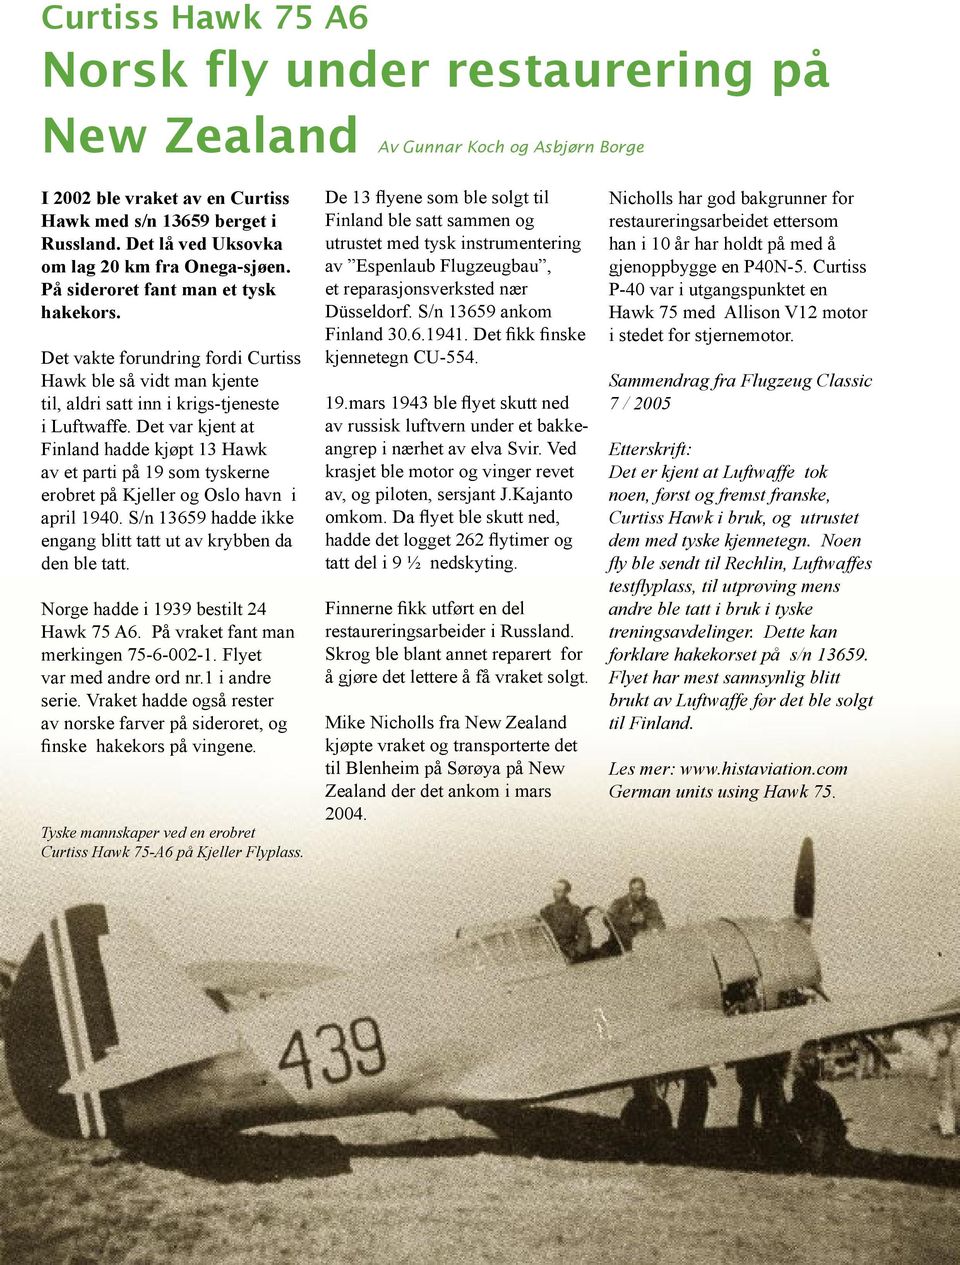 Det vakte forundring fordi Curtiss Hawk ble så vidt man kjente til, aldri satt inn i krigs-tjeneste i Luftwaffe.